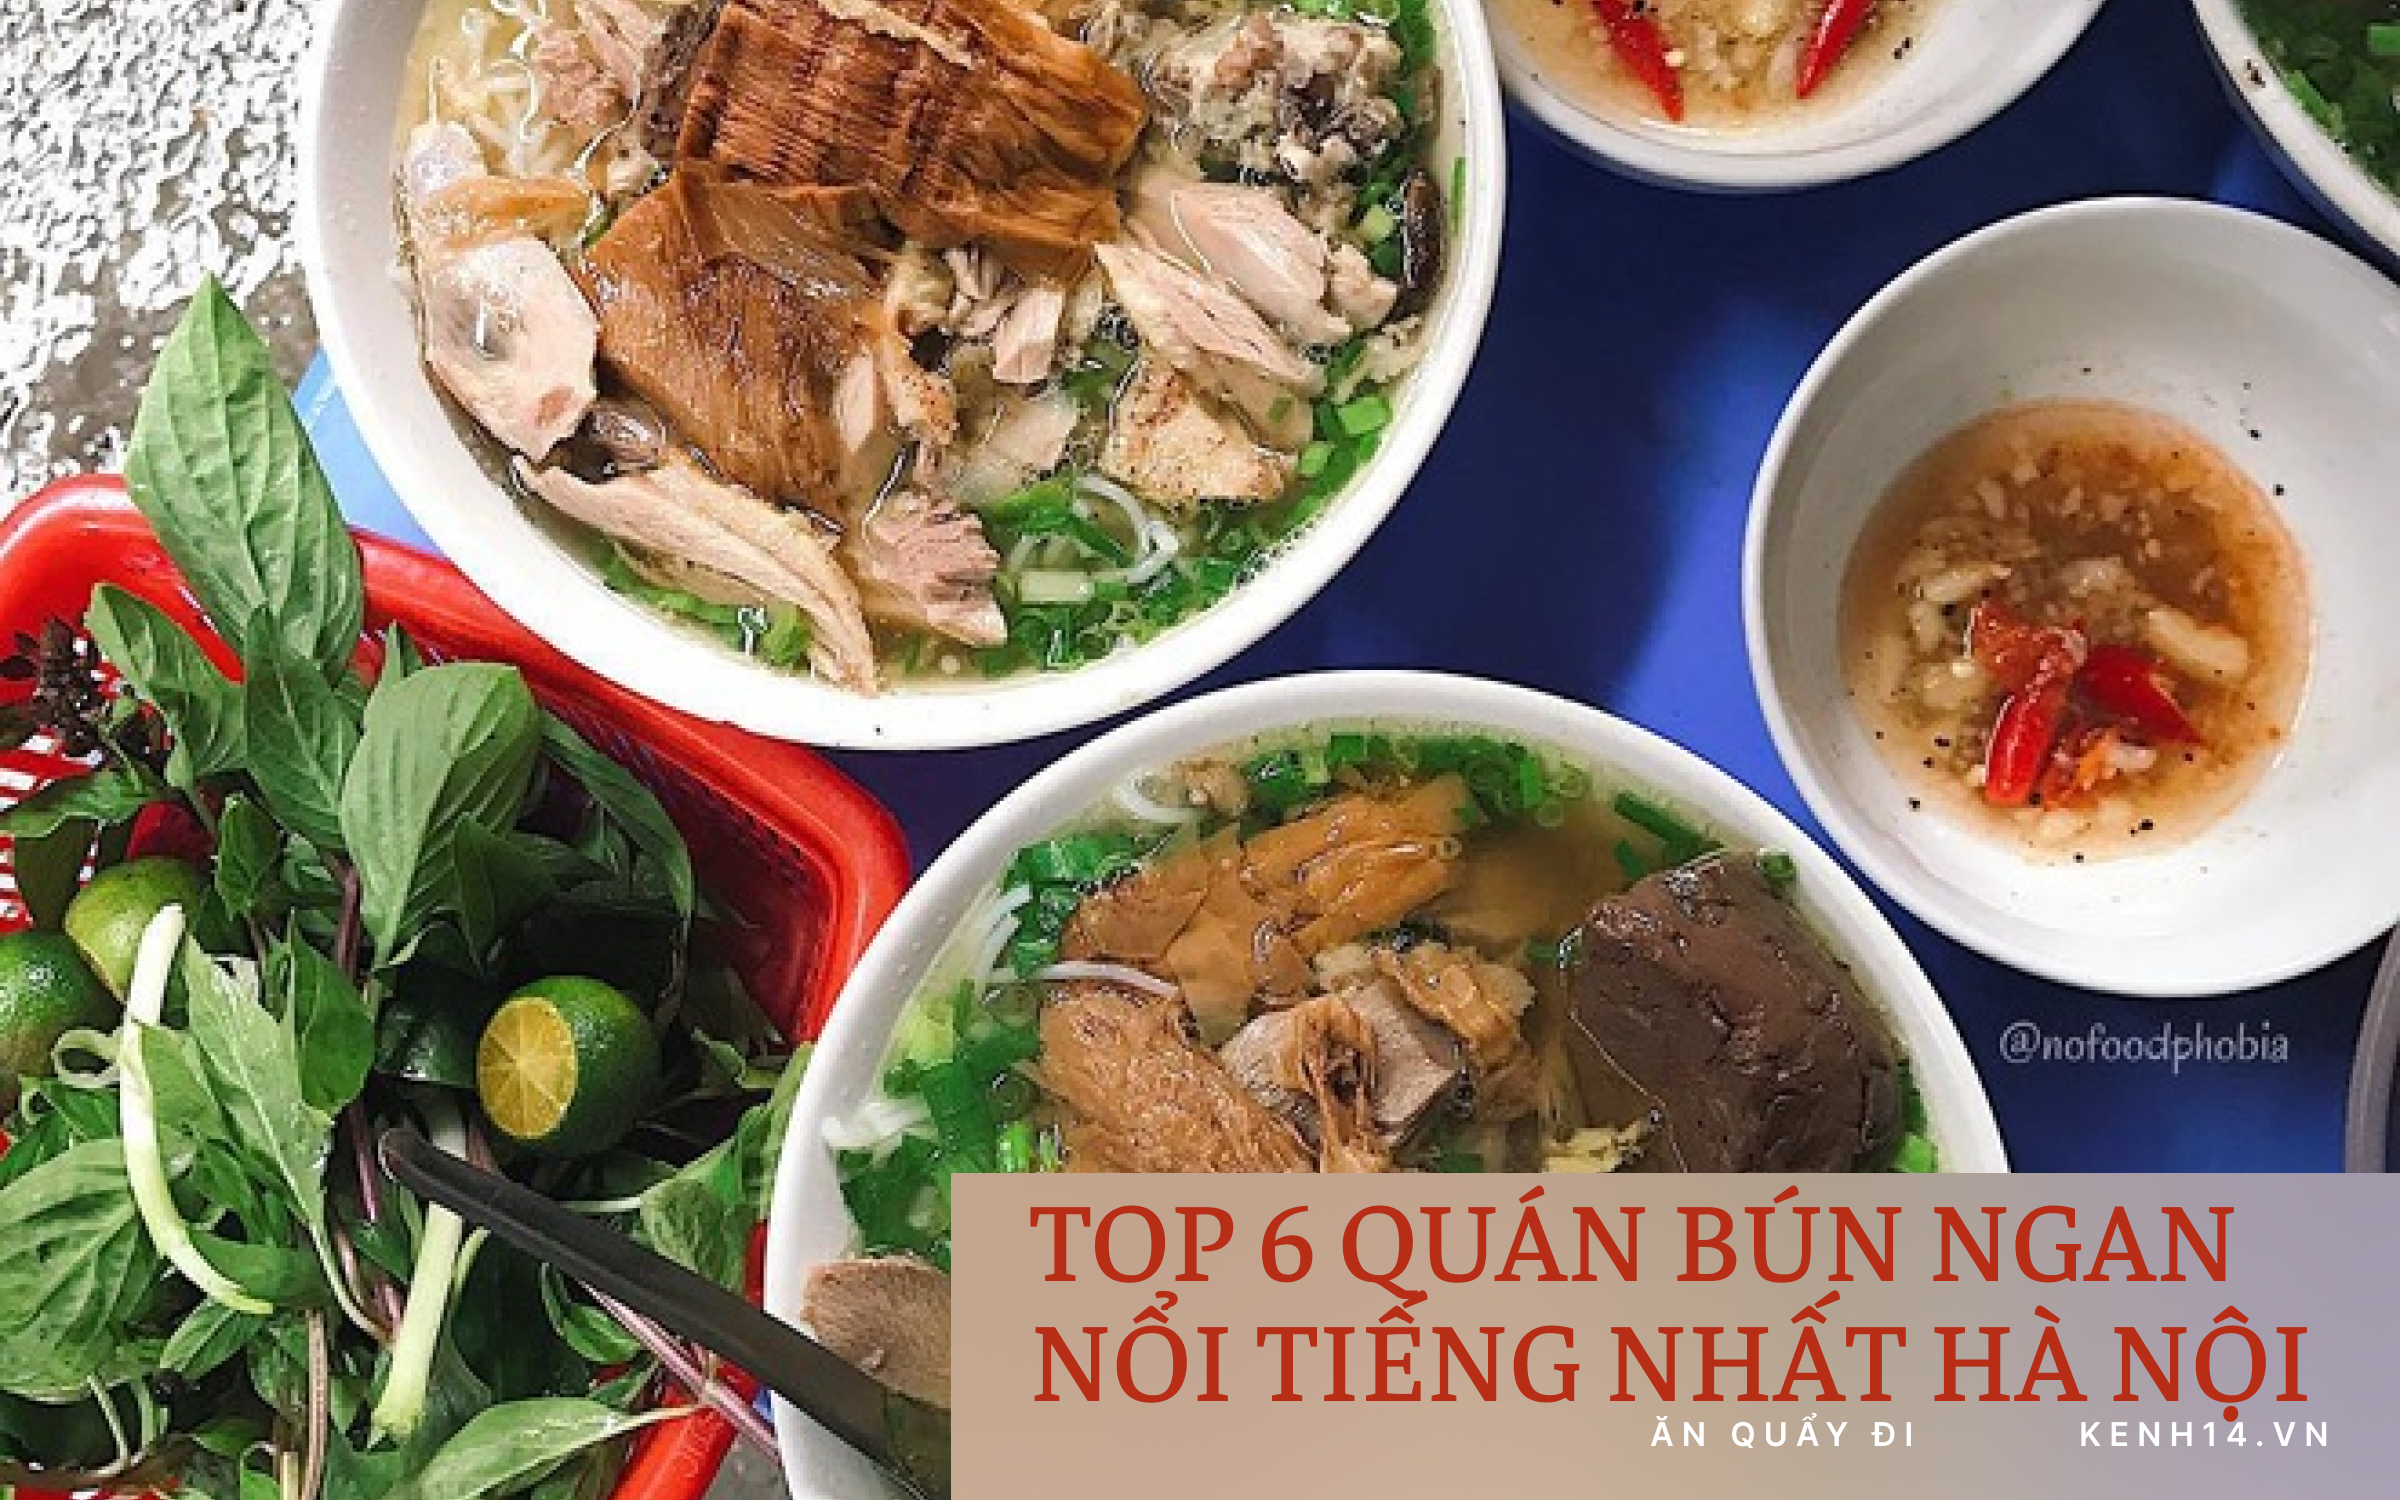 Chấm điểm 6 quán bún ngan nổi tiếng nhất Hà Nội: Ngan Nhàn "chửi" thì rầm rộ quá rồi, so với những hàng khác thì sao?